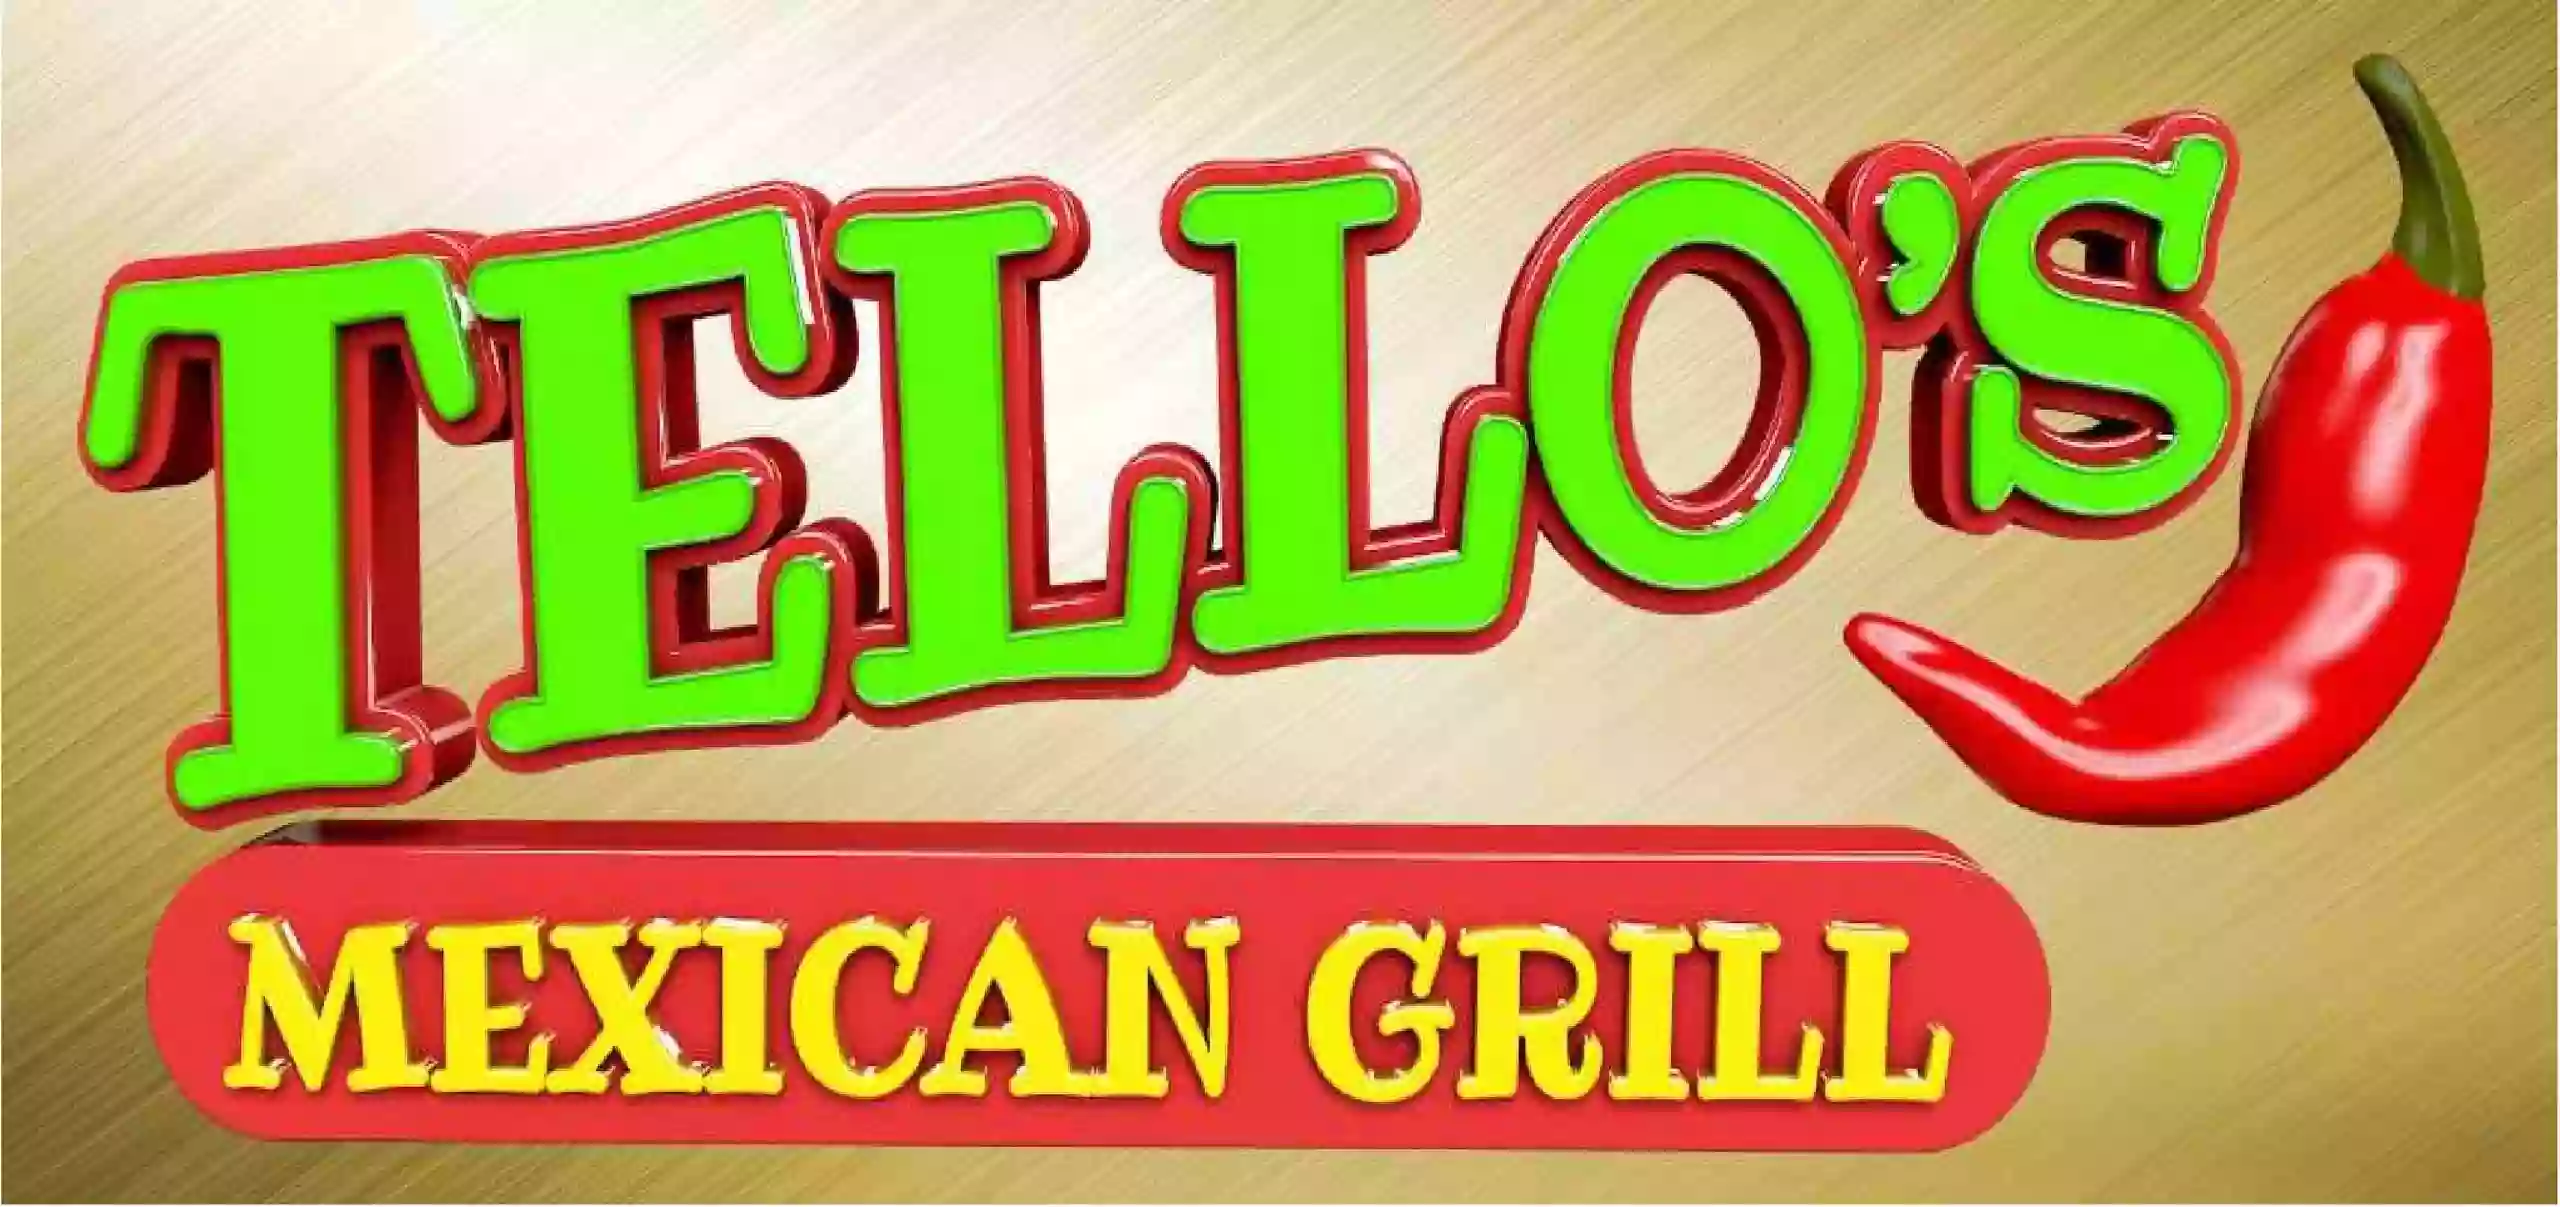 Tello’s Mexican Grill